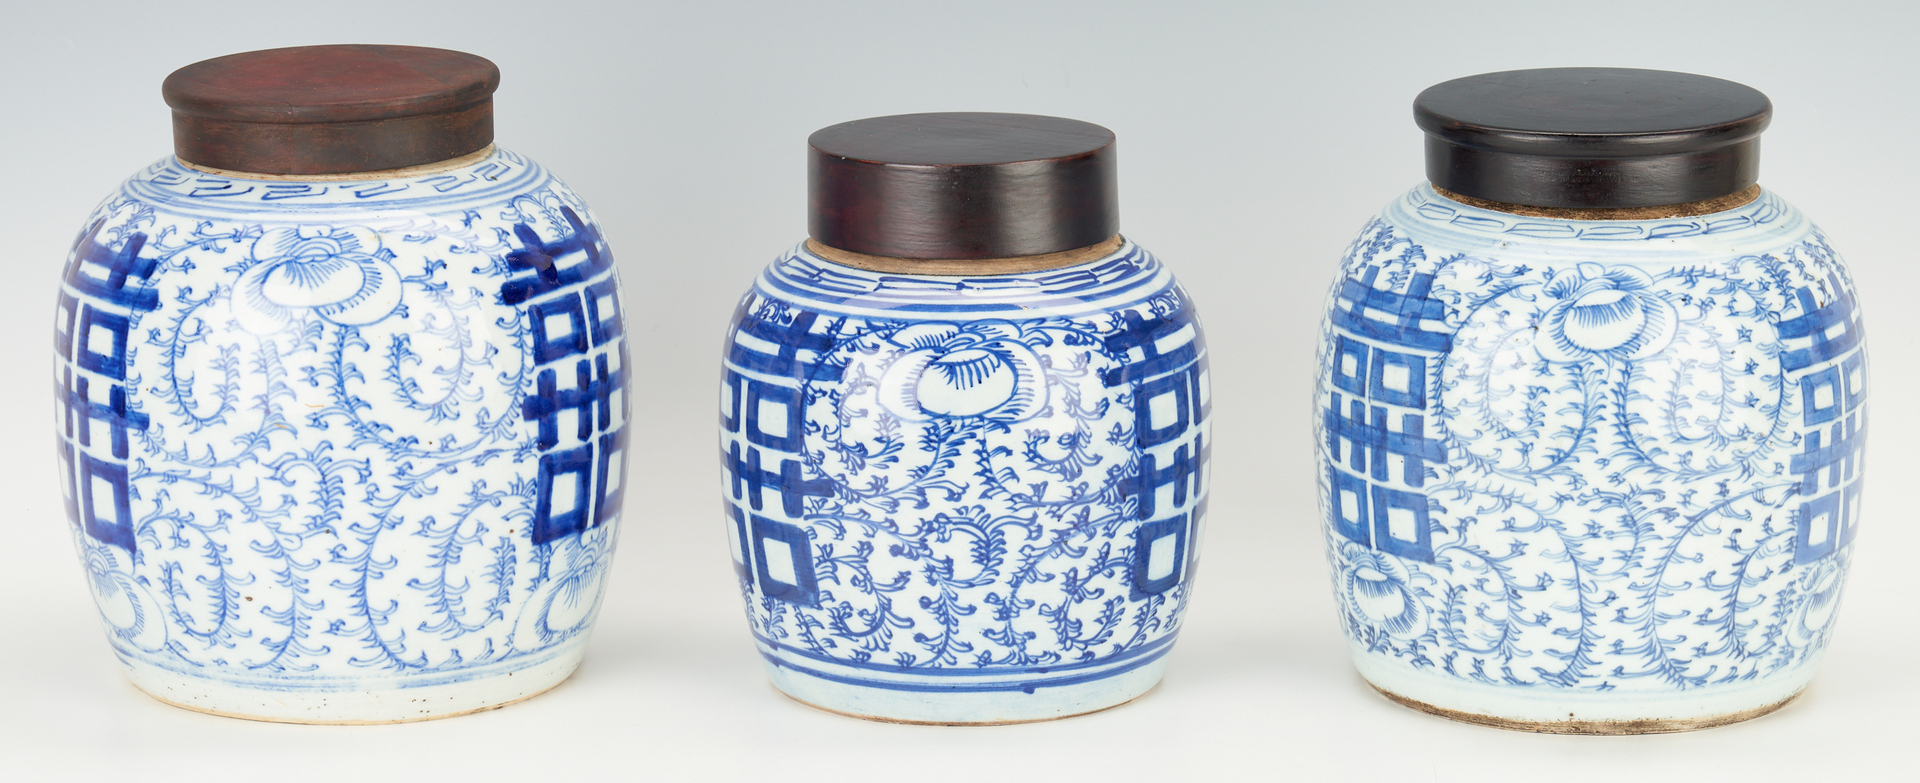 Lot 316: 3 Chinese Blue & White Porcelain Ginger Jars